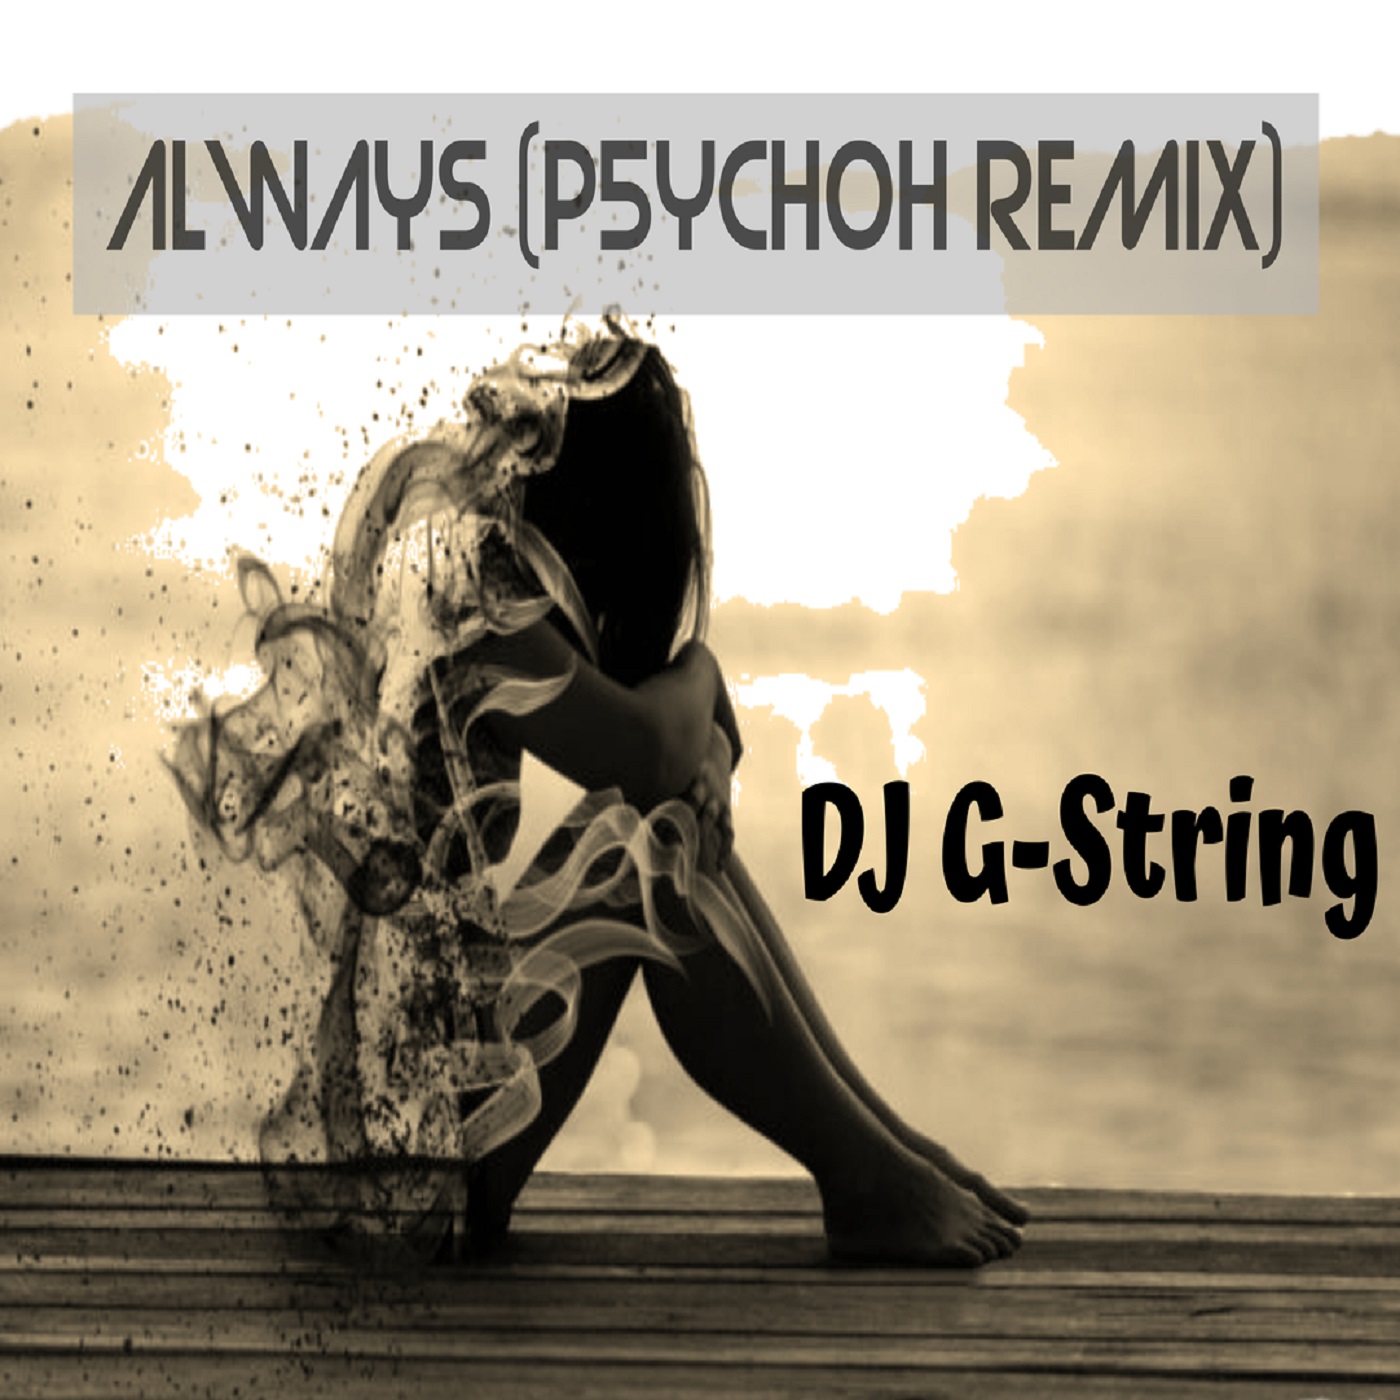 LISTEN! Always (PSYCHOH Remix) – DJ G-String